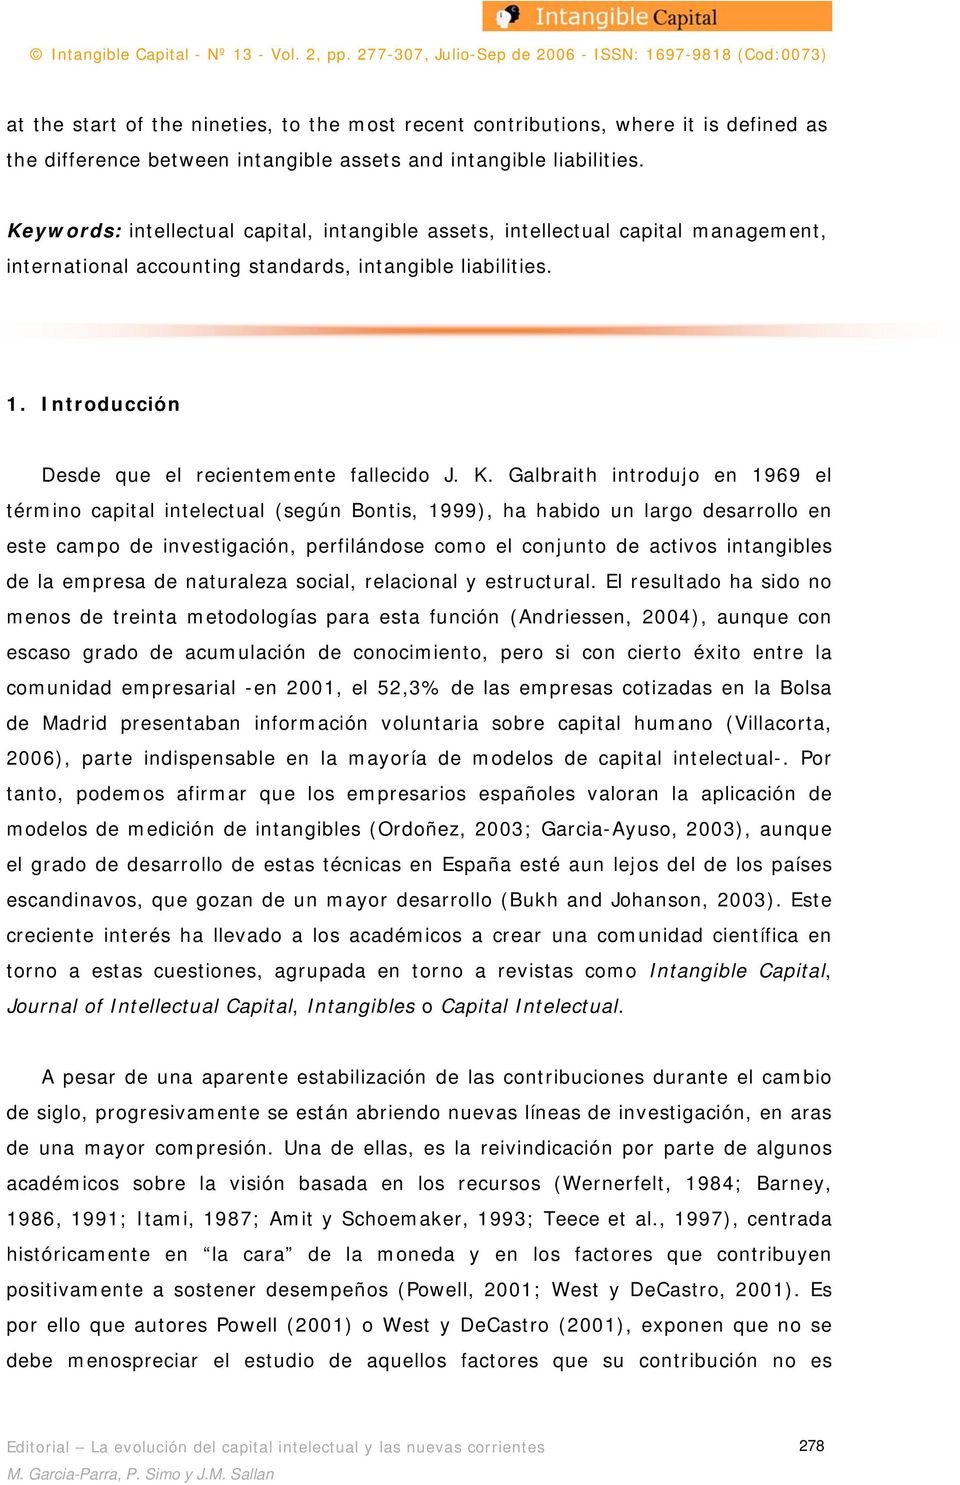 K. Galbraith introdujo en 1969 el término capital intelectual (según Bontis, 1999), ha habido un largo desarrollo en este campo de investigación, perfilándose como el conjunto de activos intangibles